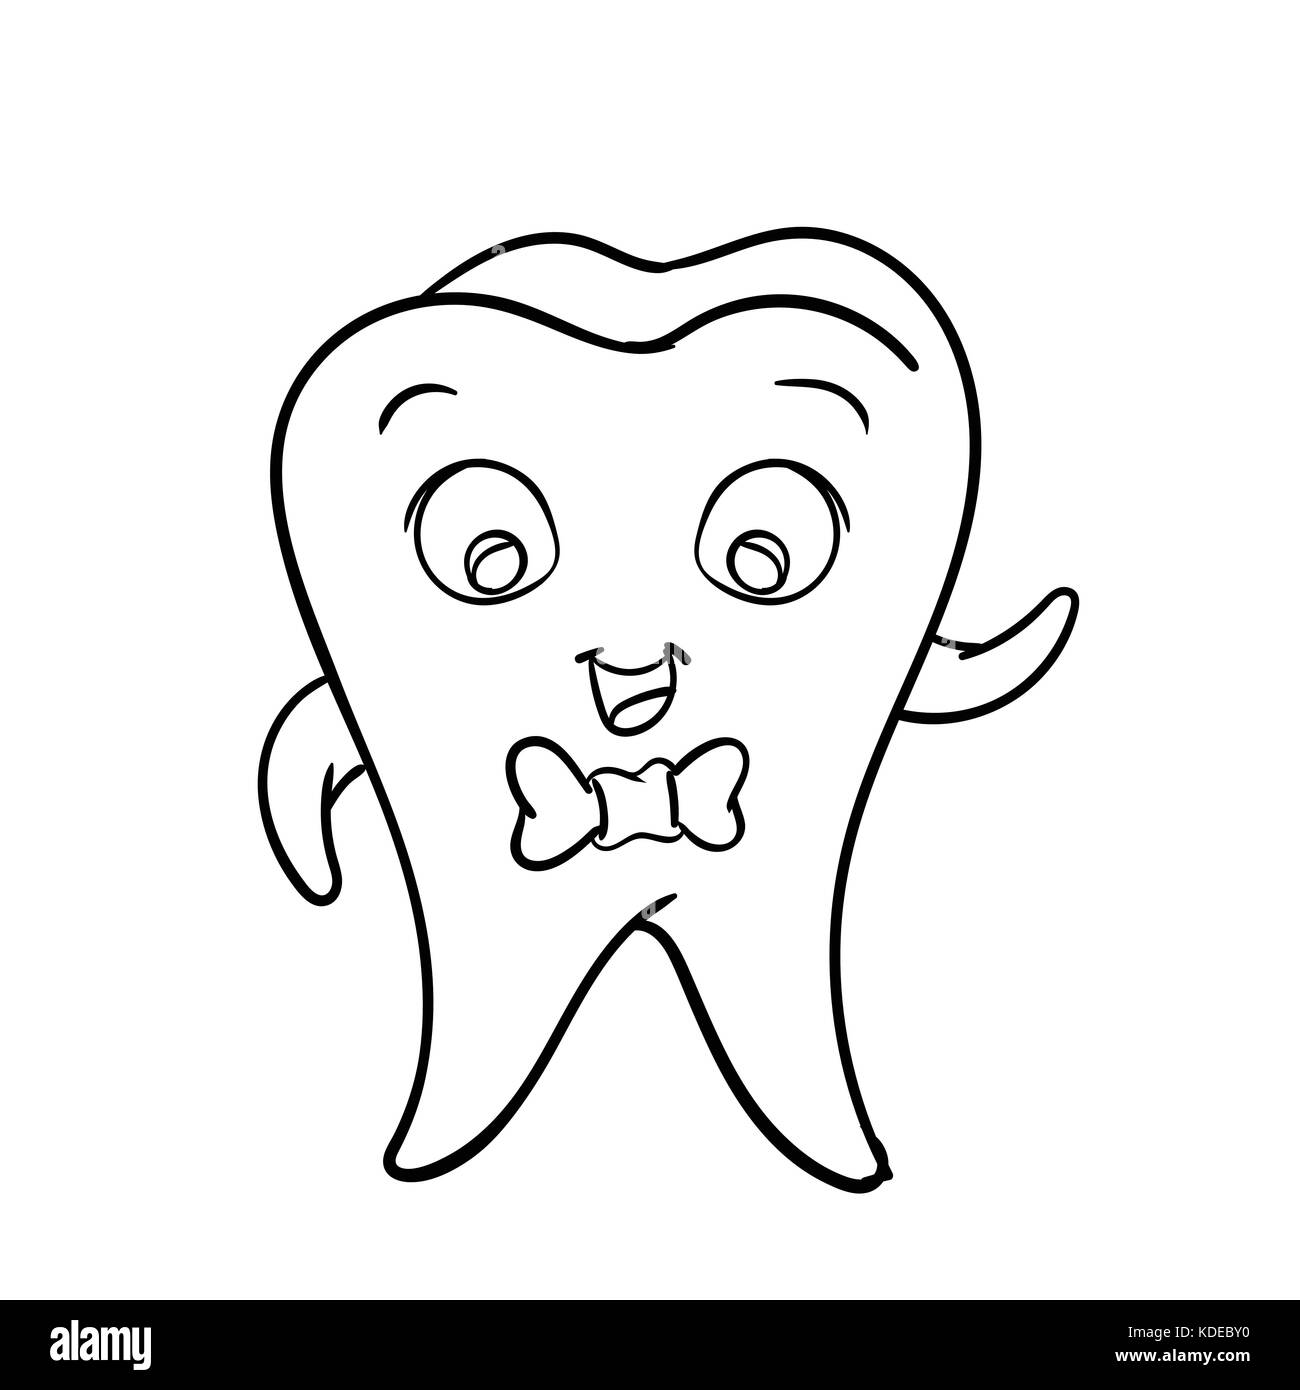 Cartoon faccina felice dente dentale character-vector character design. Illustrazione Vettoriale